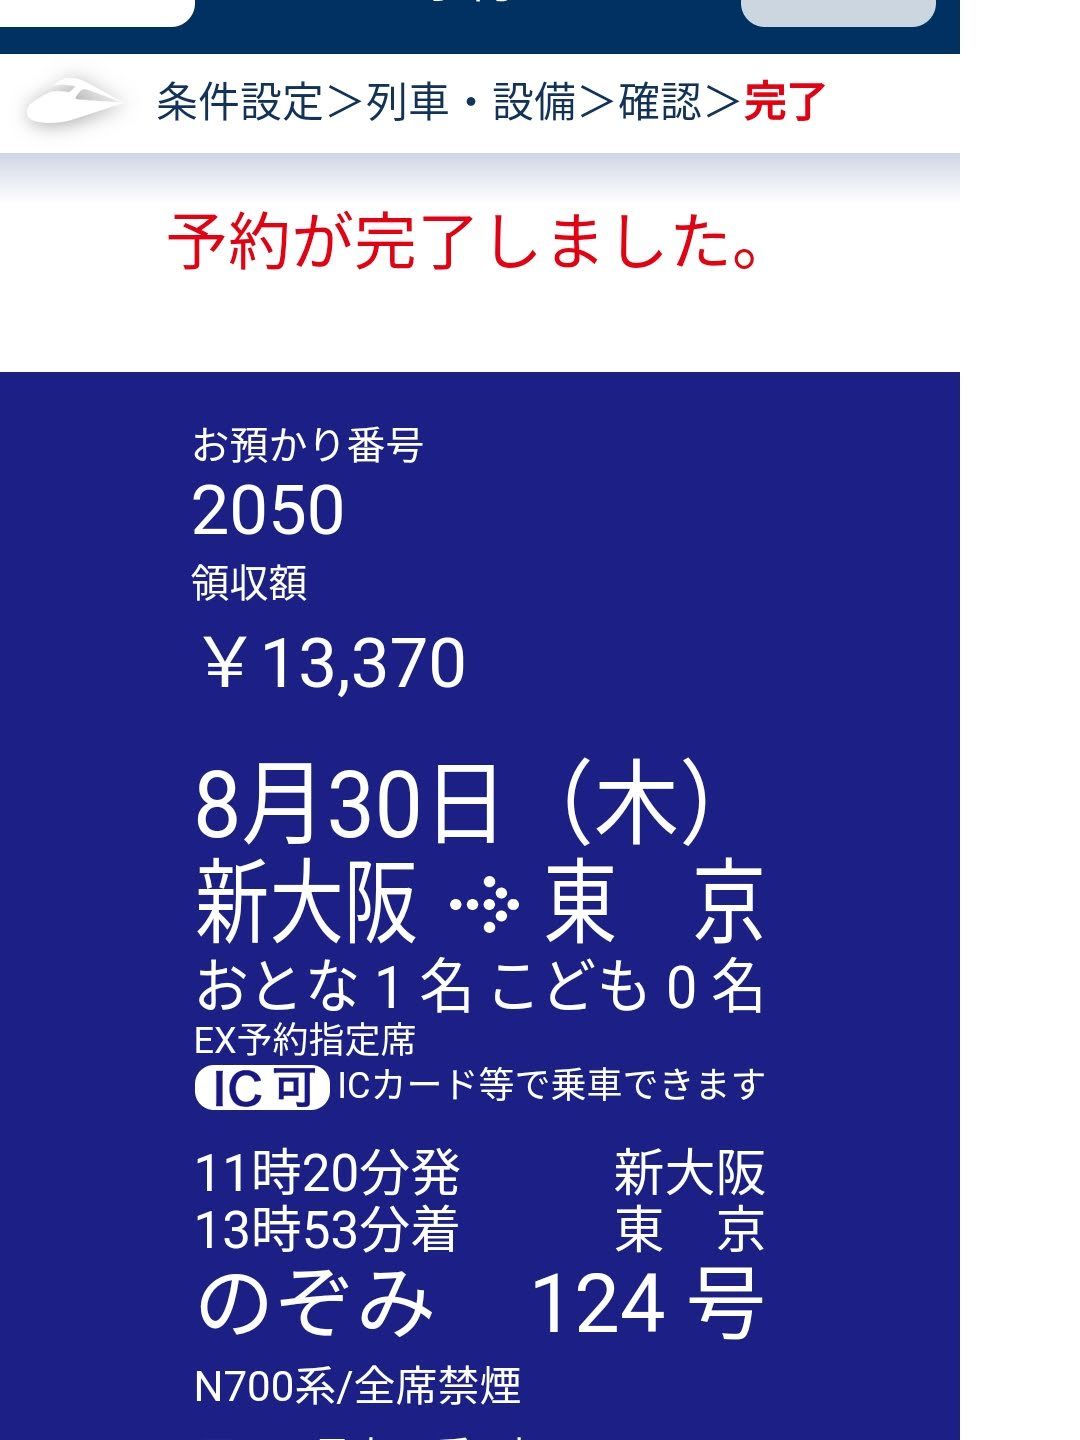 新幹線の予約